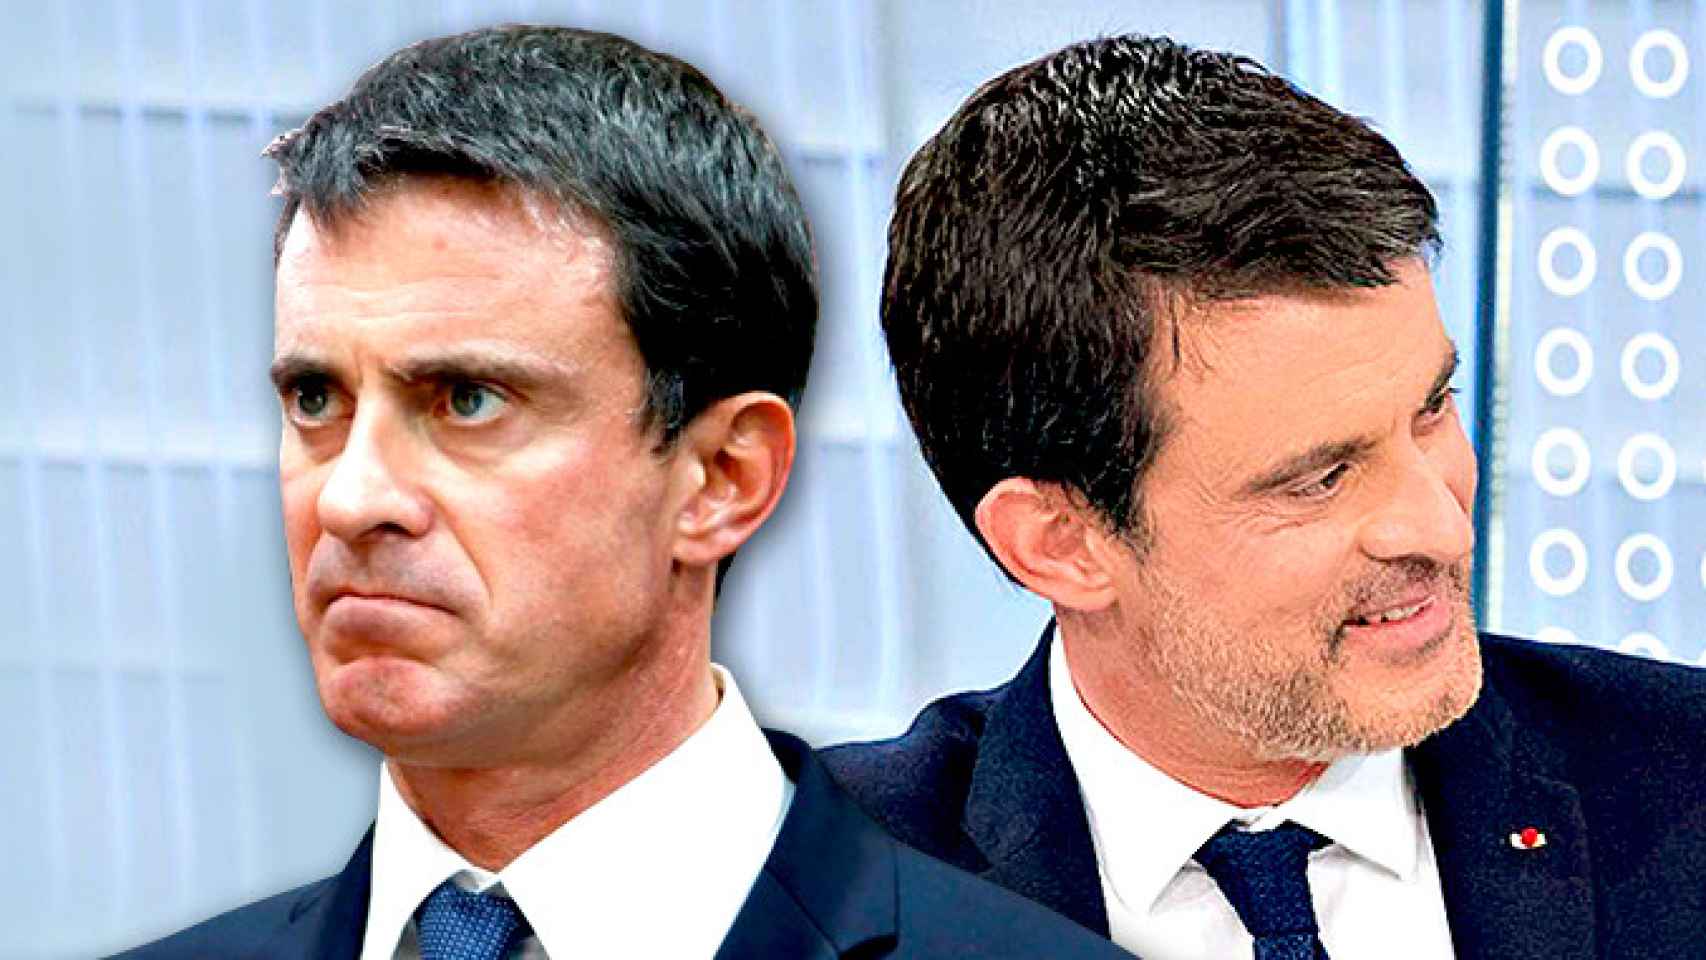 El exprimer ministro francés Manuel Valls, con los beneficios y riesgos de su candidatura / CG